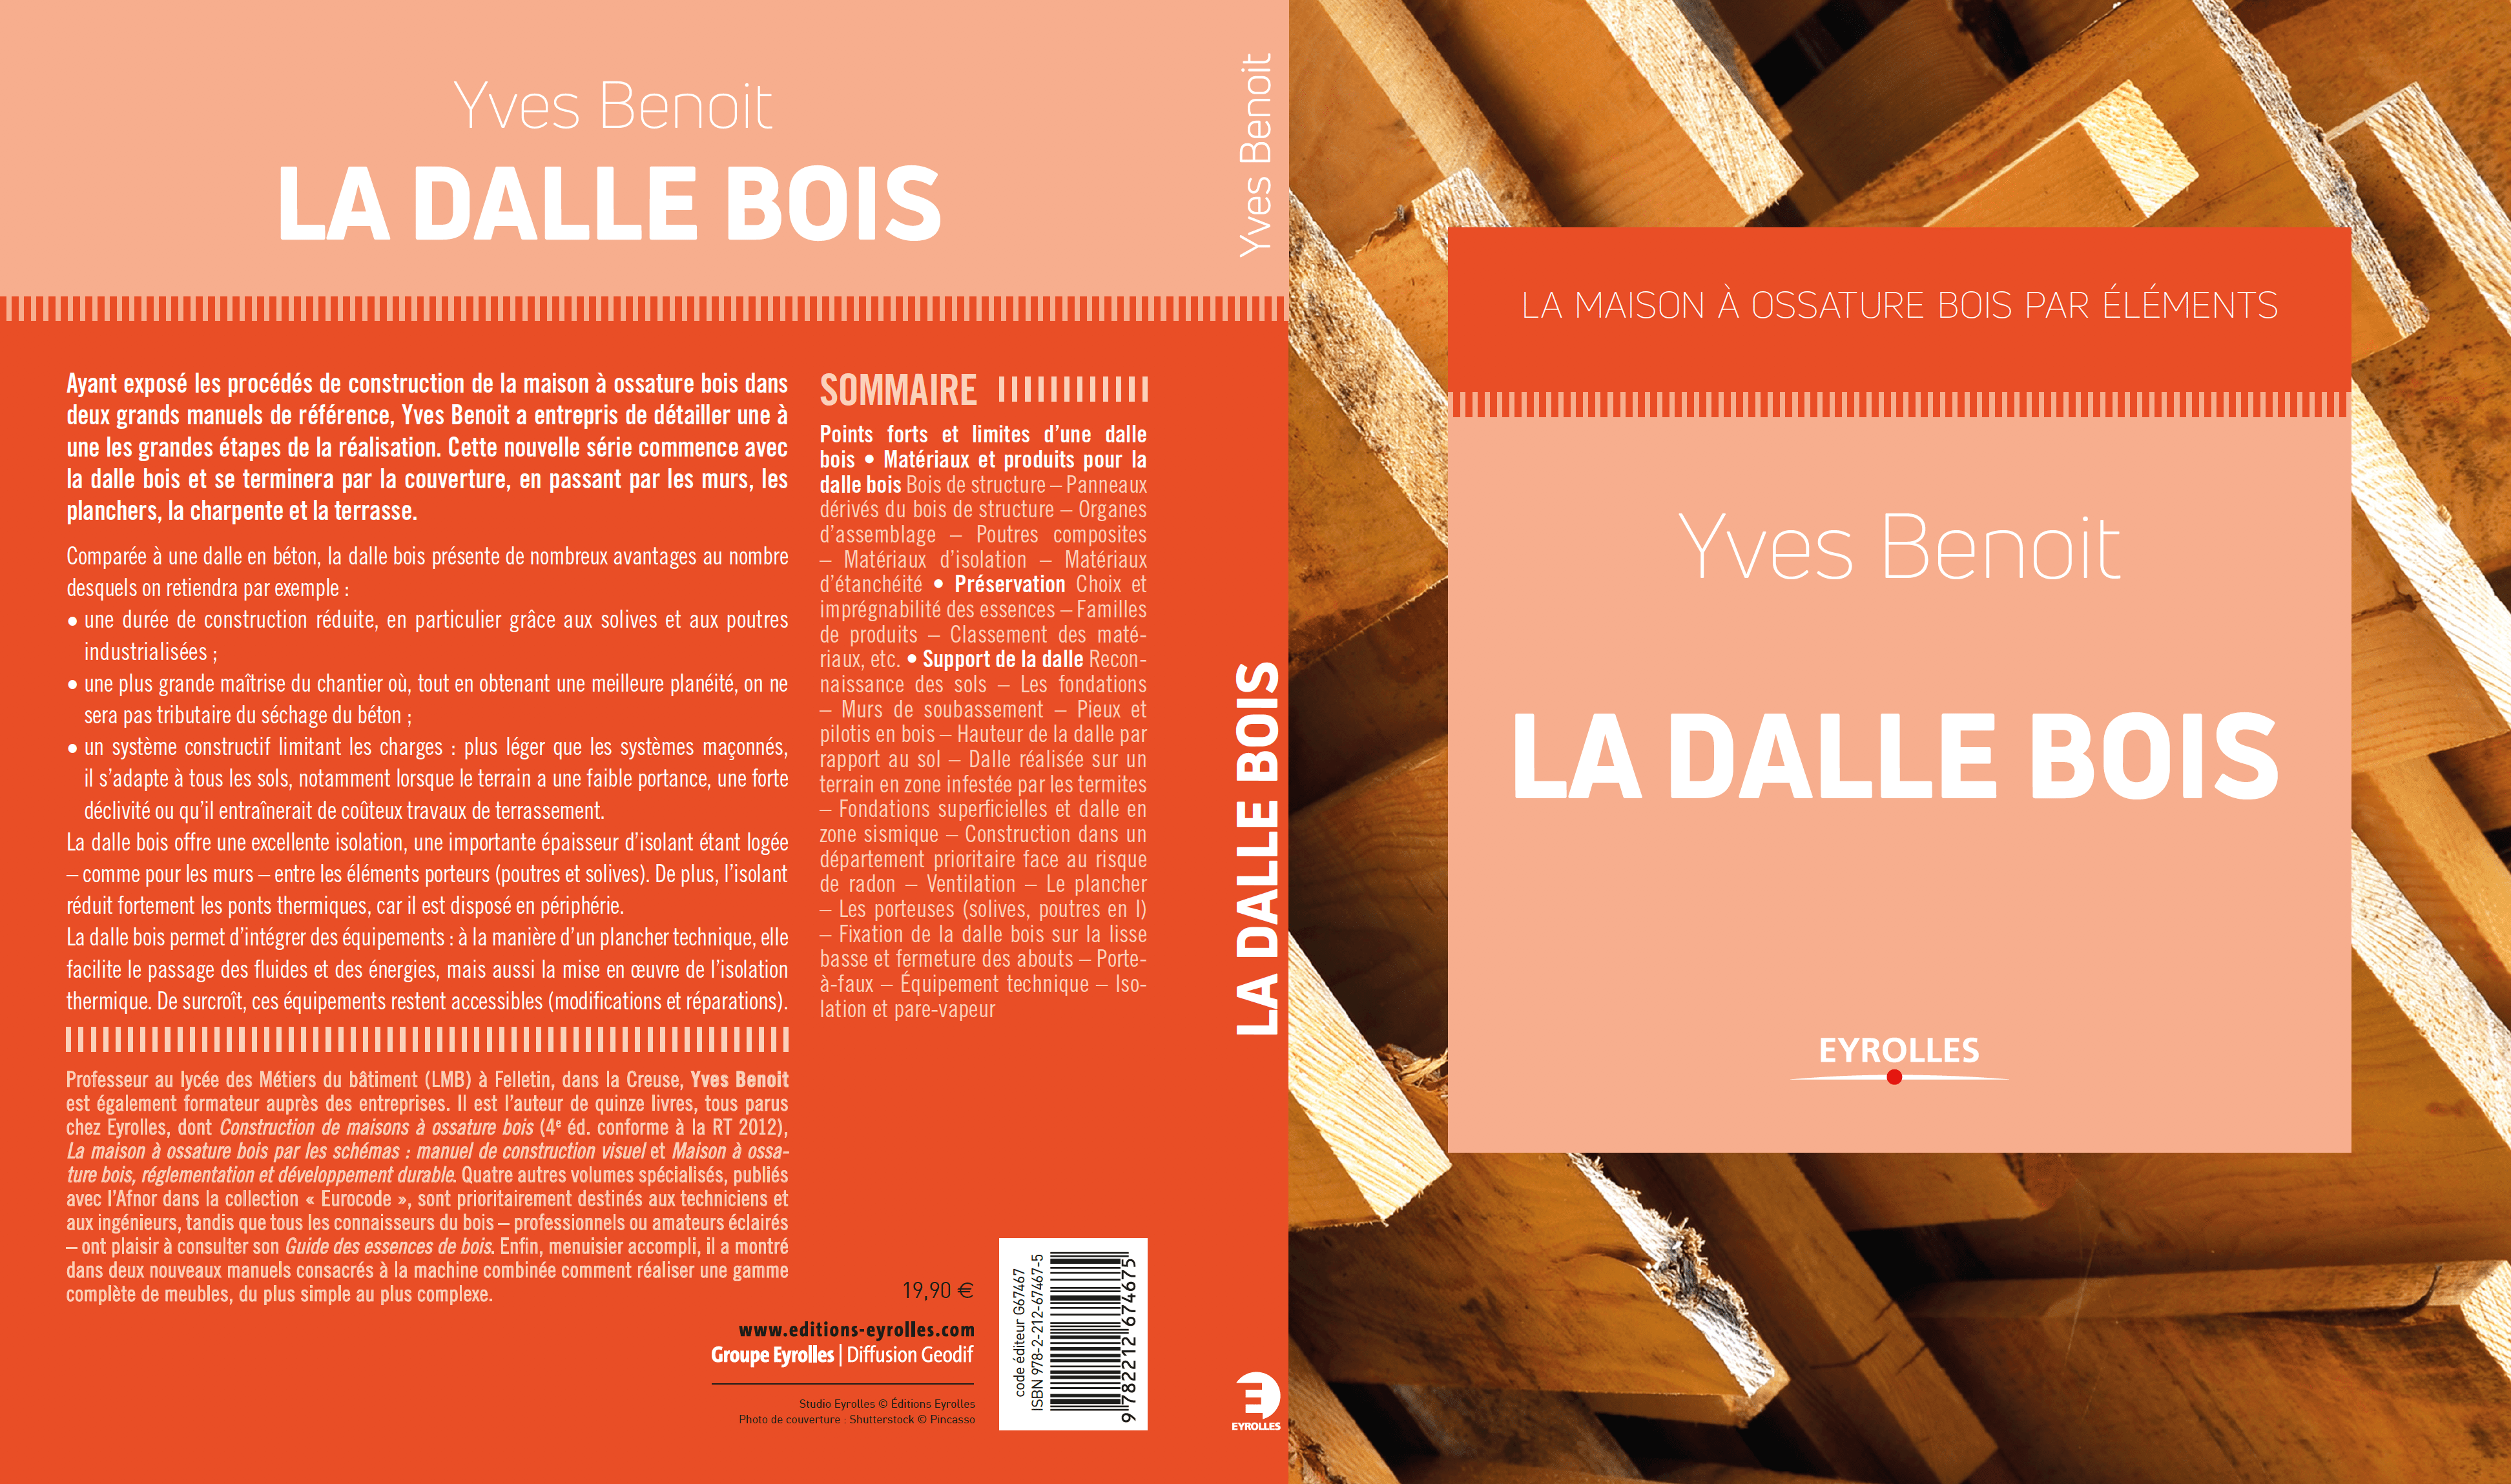 Edition, Eyrolles, La Dalle Bois, Livre